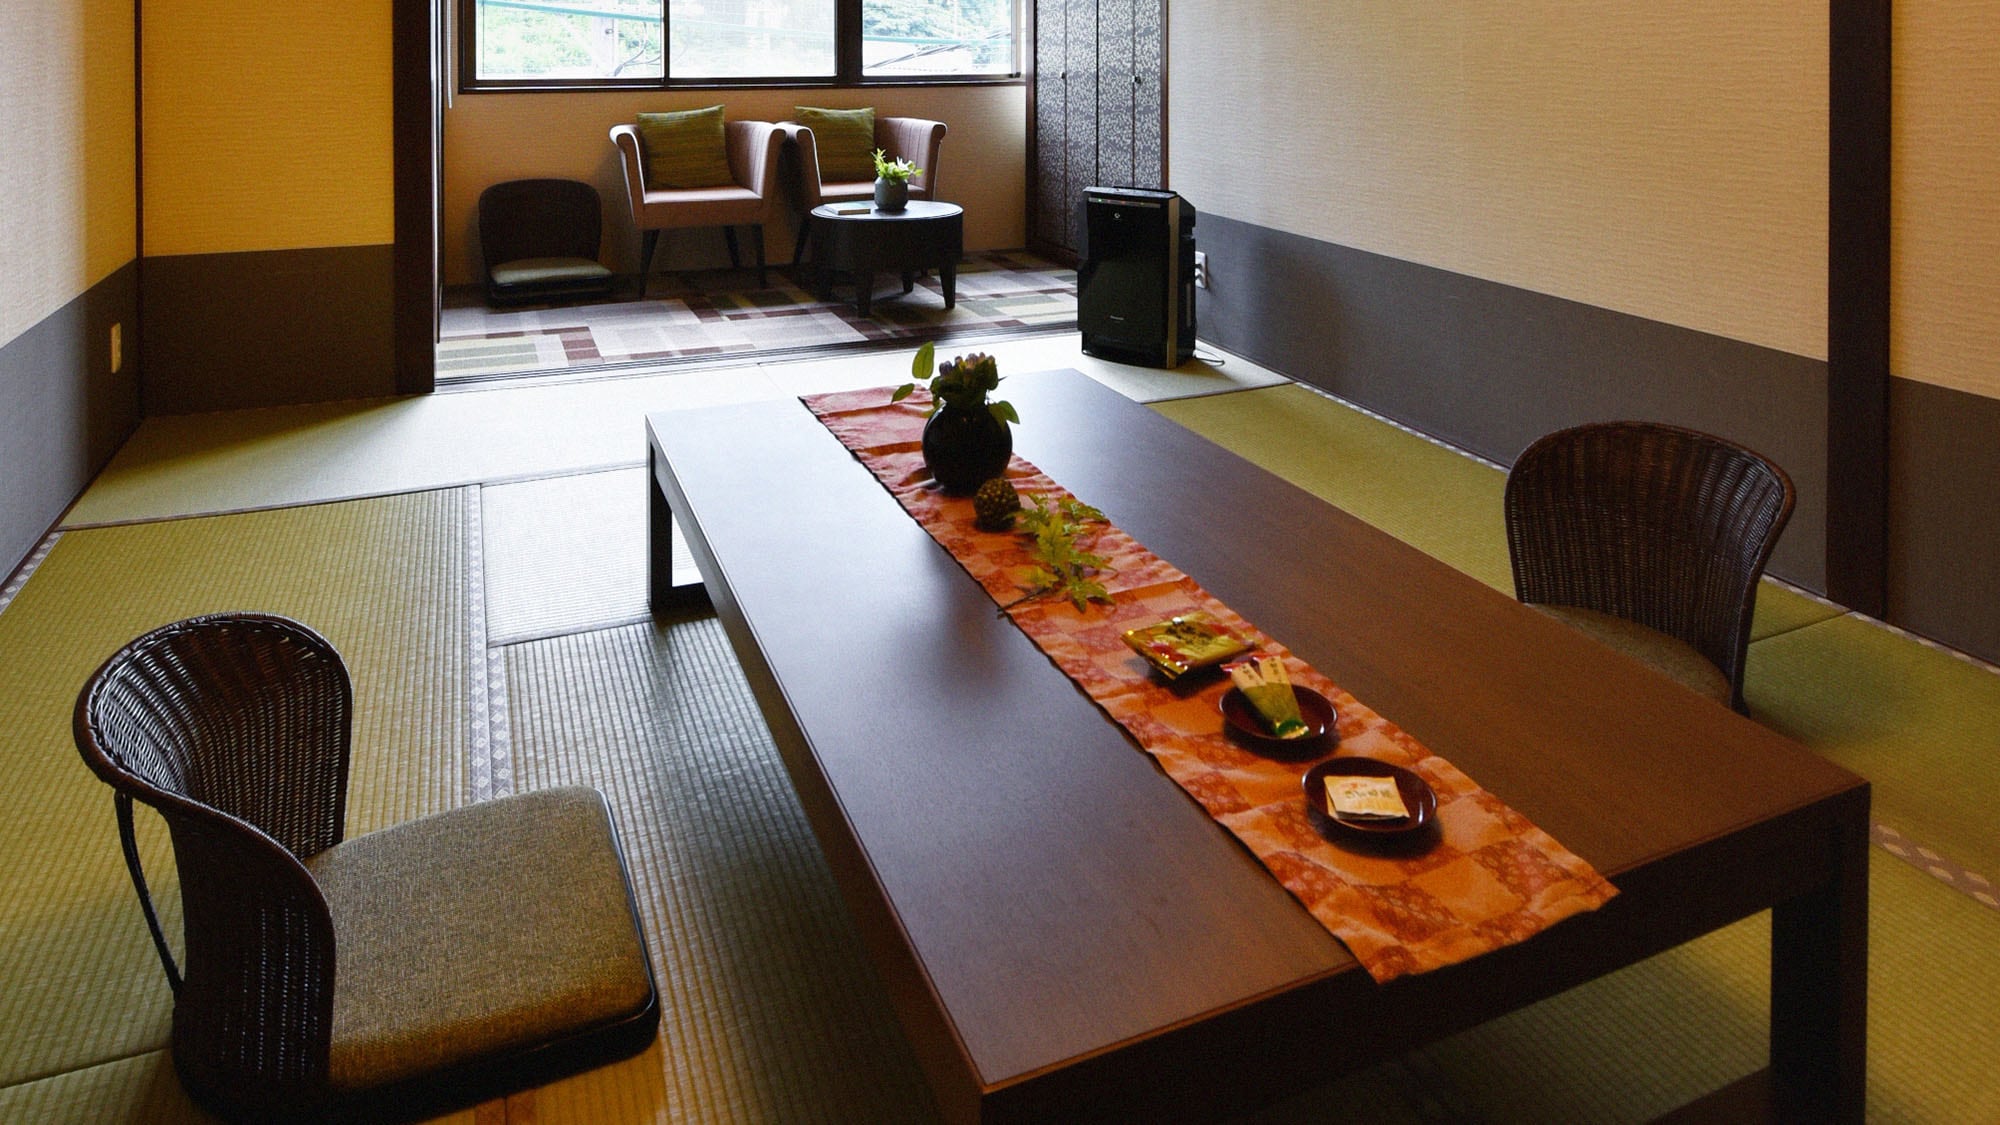 ・ [普通客房示例] 8 至 12 张榻榻米的日式房间。没有华丽装饰的简单内饰